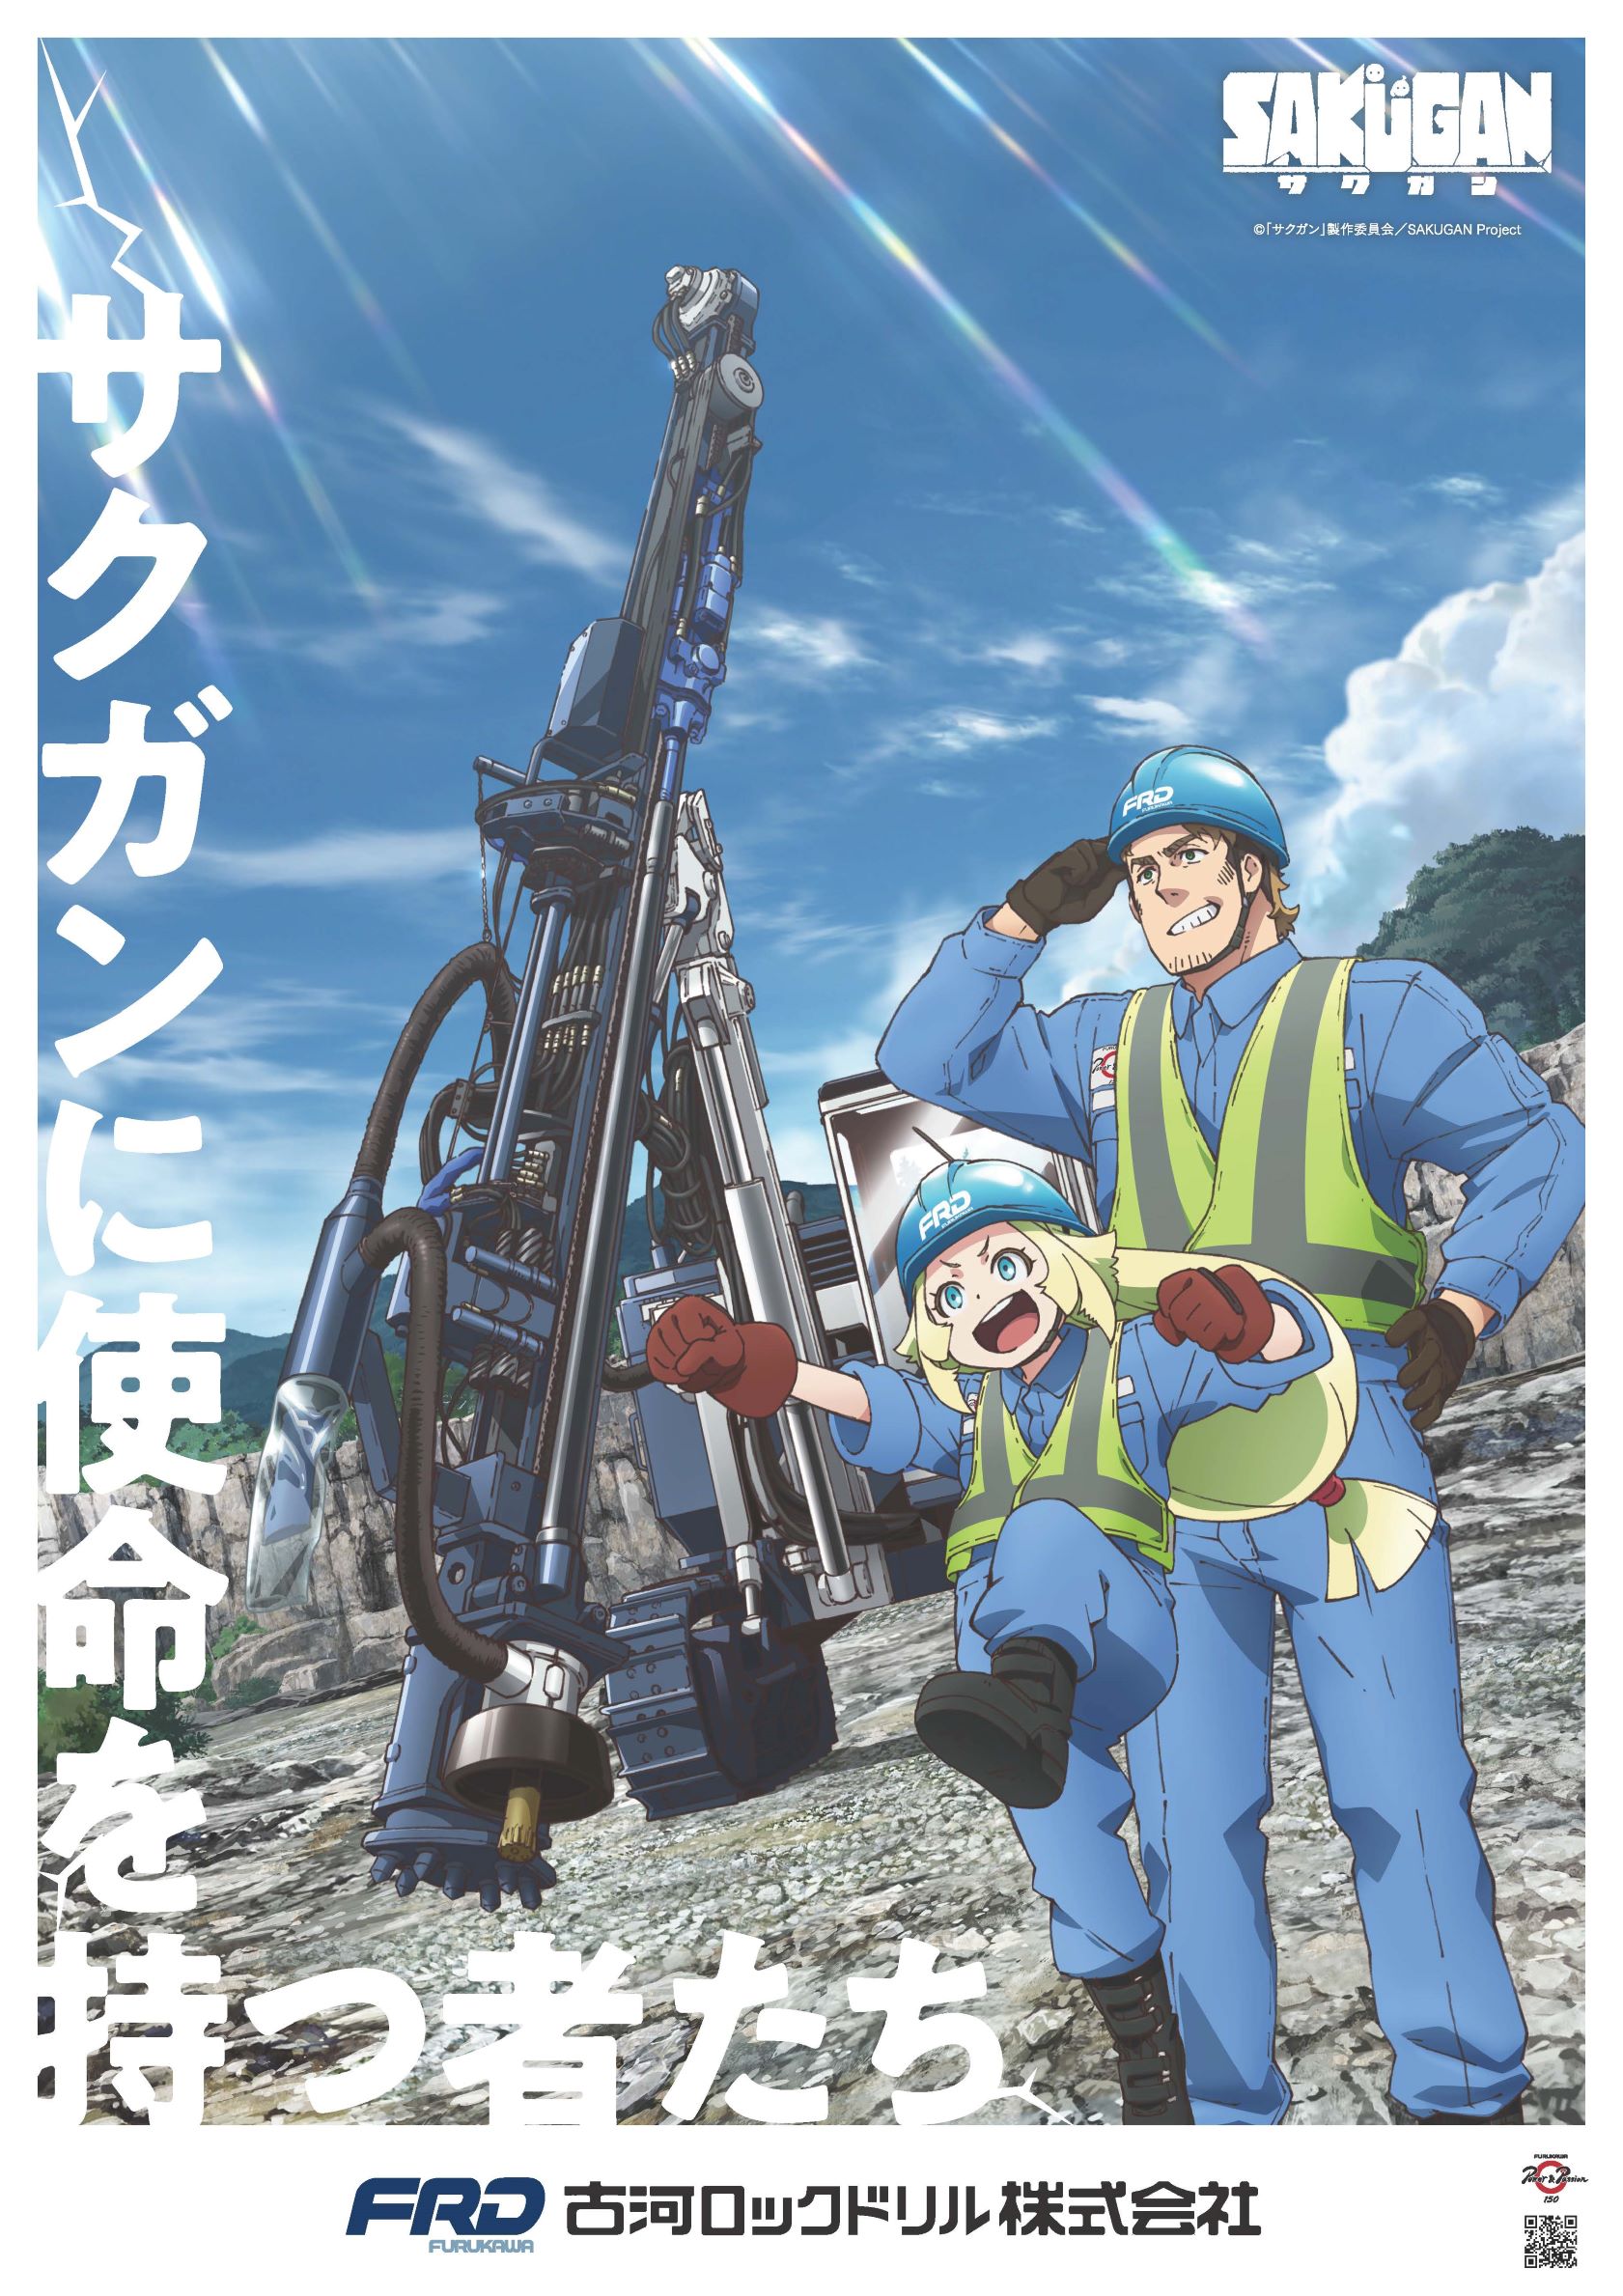 Tvアニメ サクガン 古河ロックドリル コラボポスターを制作 古河機械金属株式会社のプレスリリース